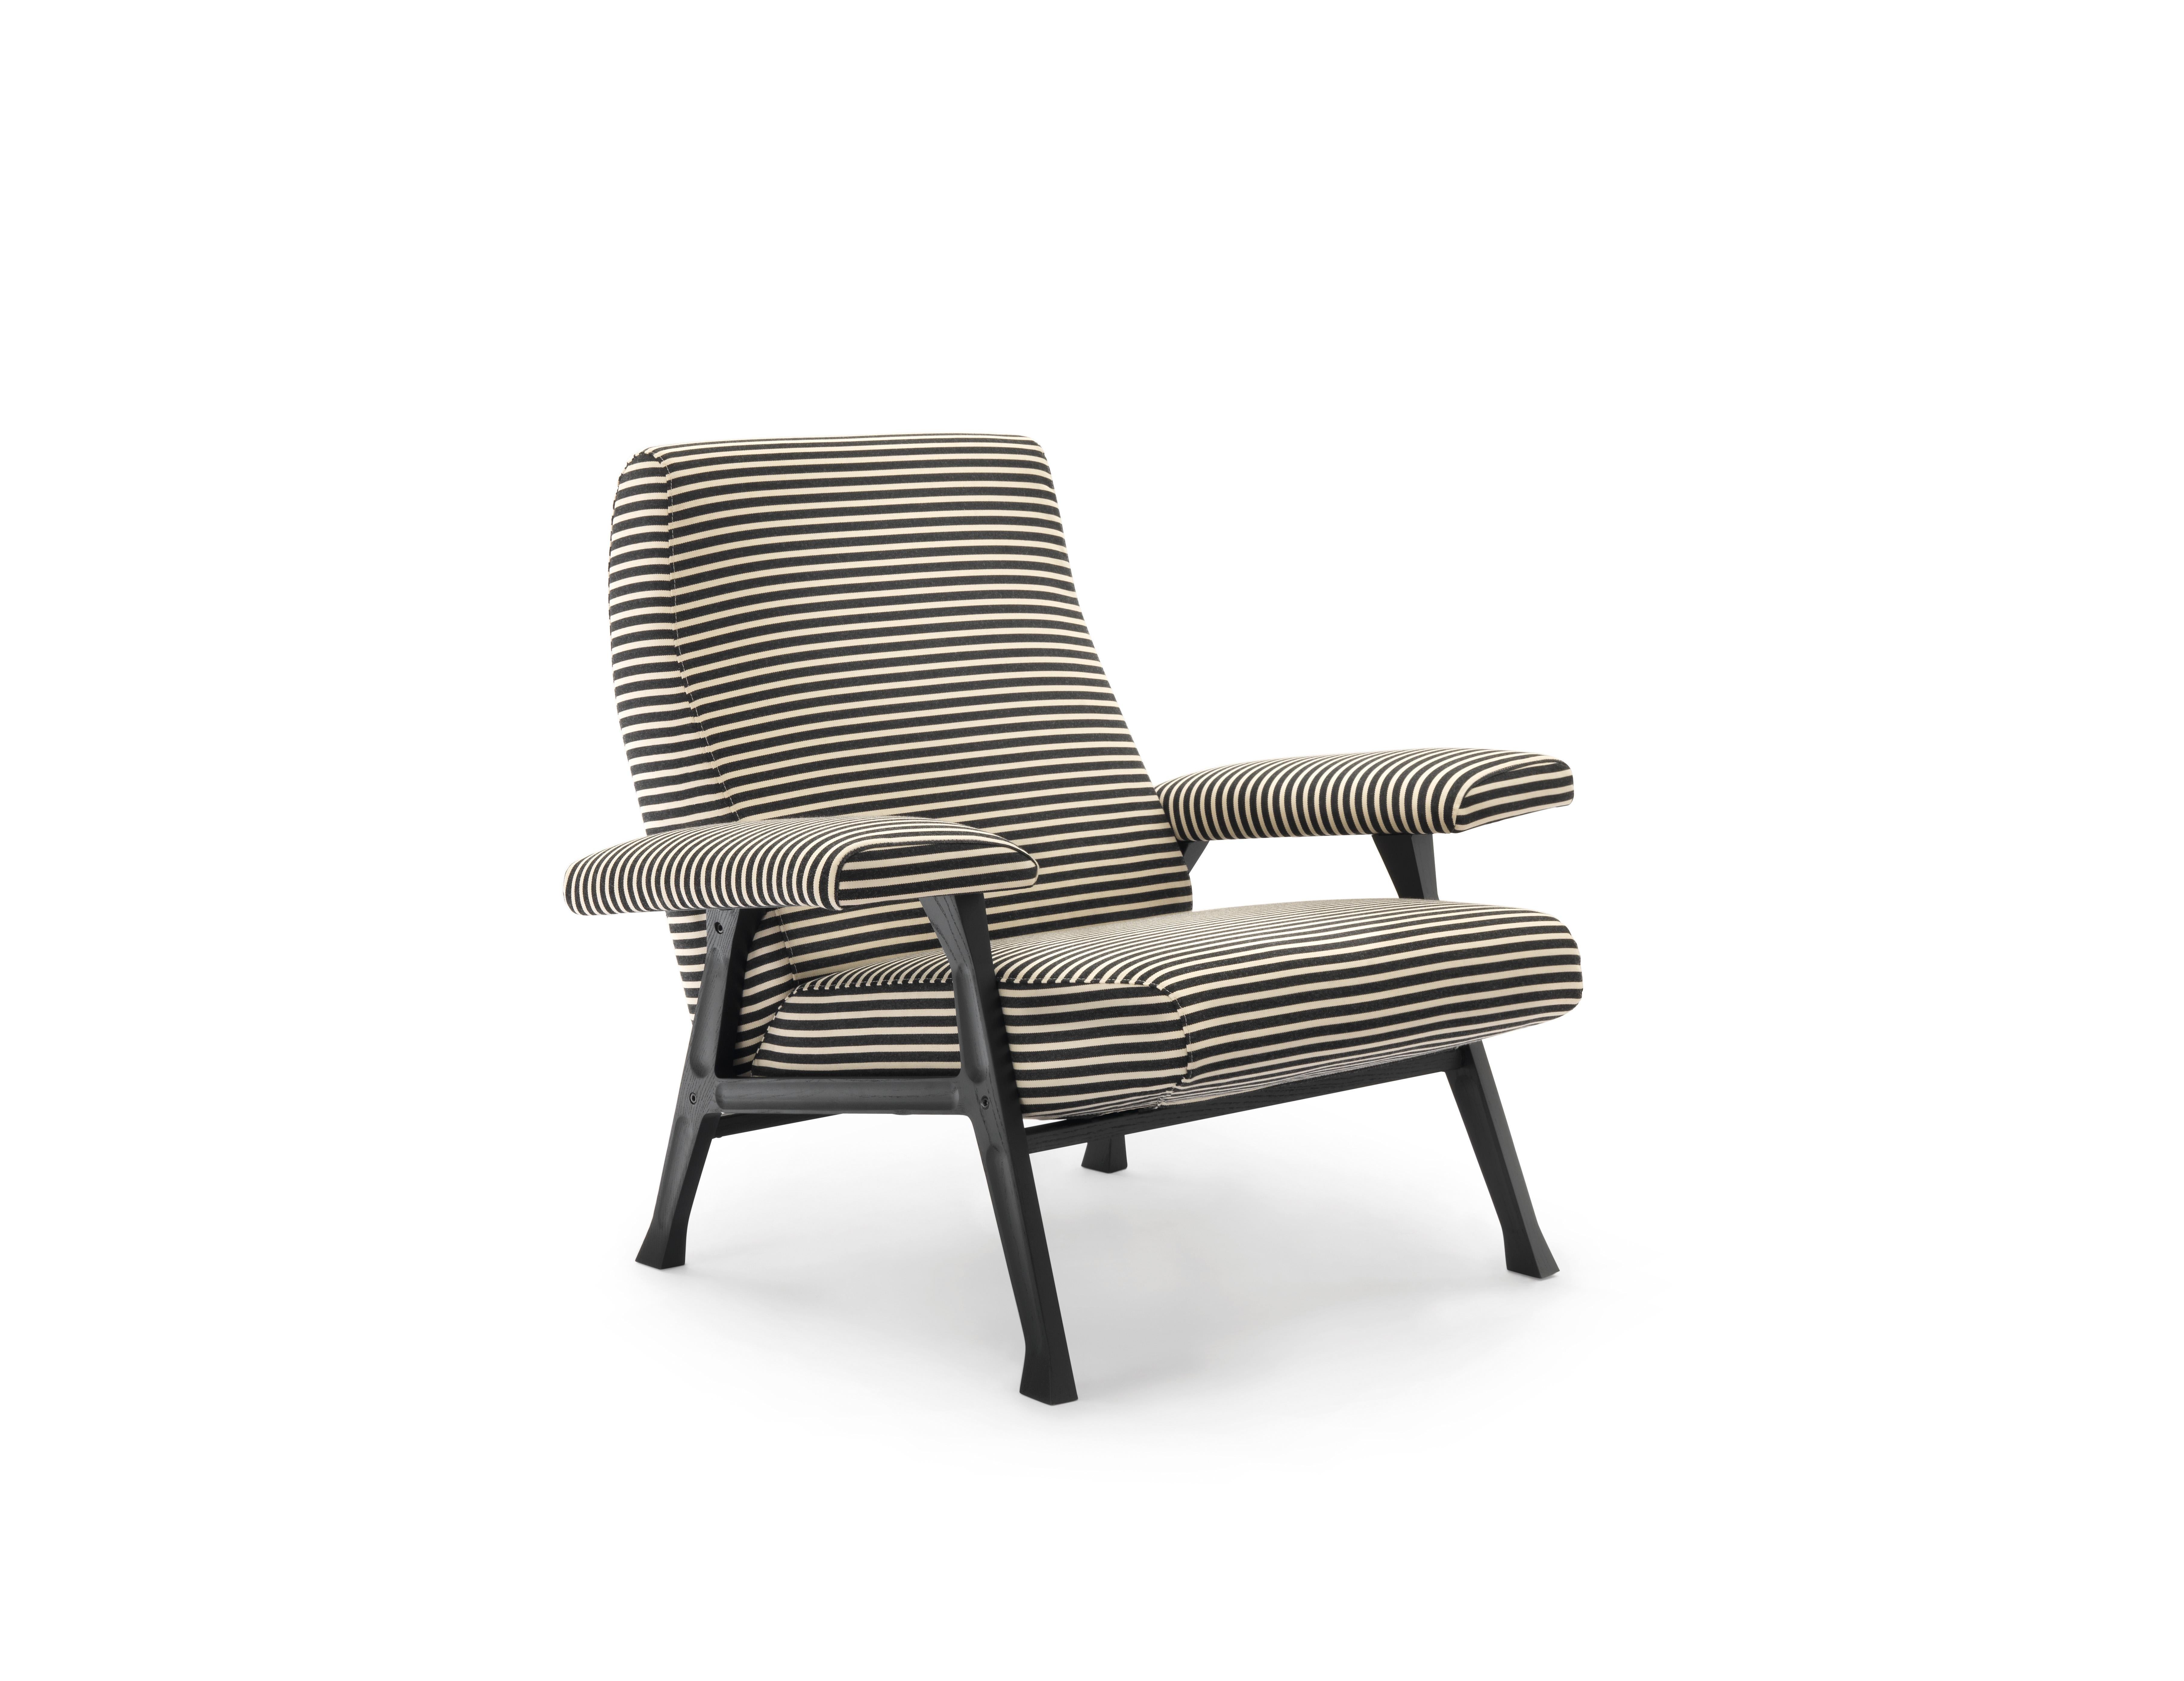 Wir befinden uns am Ende der 50er Jahre: eine interessante Serie von Sesseln und Sofas, von Roberto Menghi entworfen und Hall genannt, schließt sich der arflex-Kollektion an. Der Sessel Hall erhält 1959 eine ehrenvolle Erwähnung für den Compasso